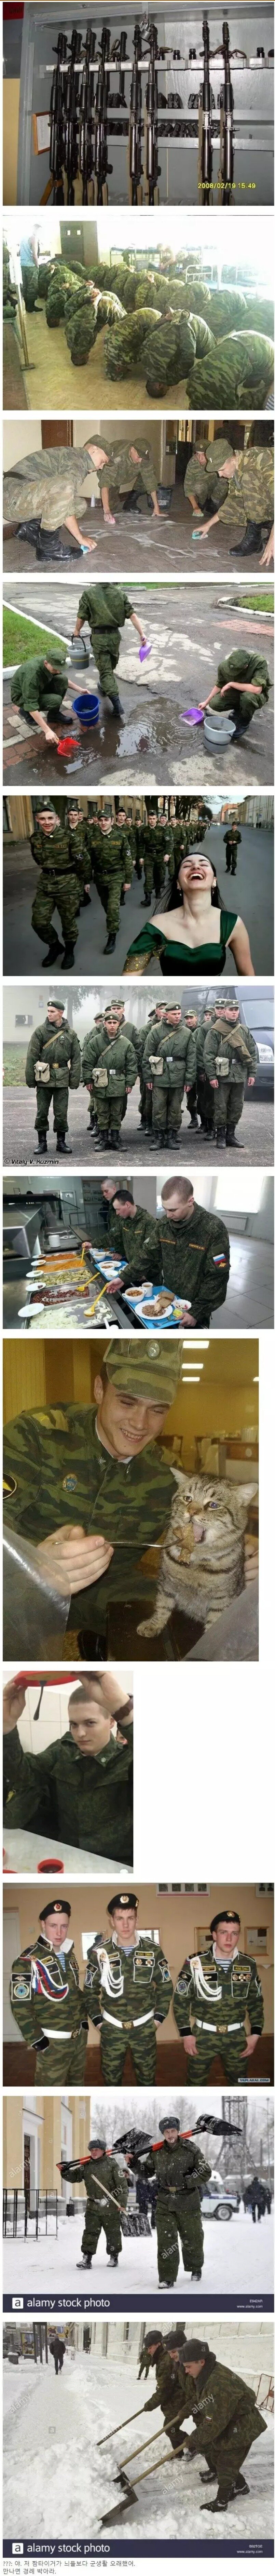 뭔가 많이 익숙한 러시아 군대